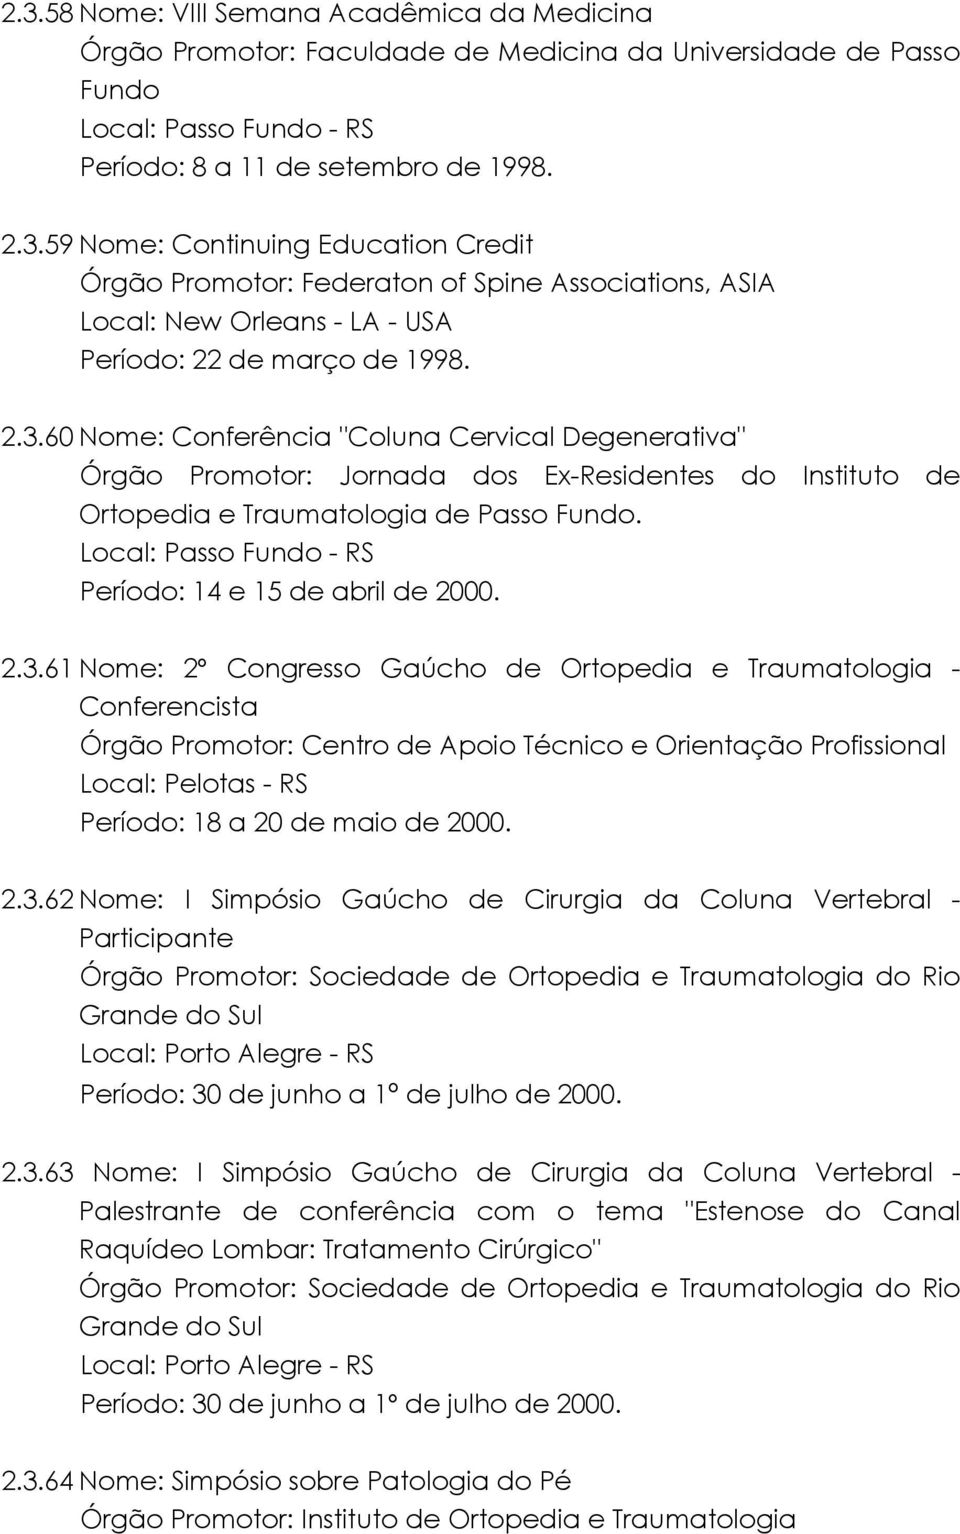 2.3.62 Nome: I Simpósio Gaúcho de Cirurgia da Coluna Vertebral - Participante Órgão Promotor: Sociedade de Ortopedia e Traumatologia do Rio Grande do Sul Local: Porto Alegre - RS Período: 30 de junho